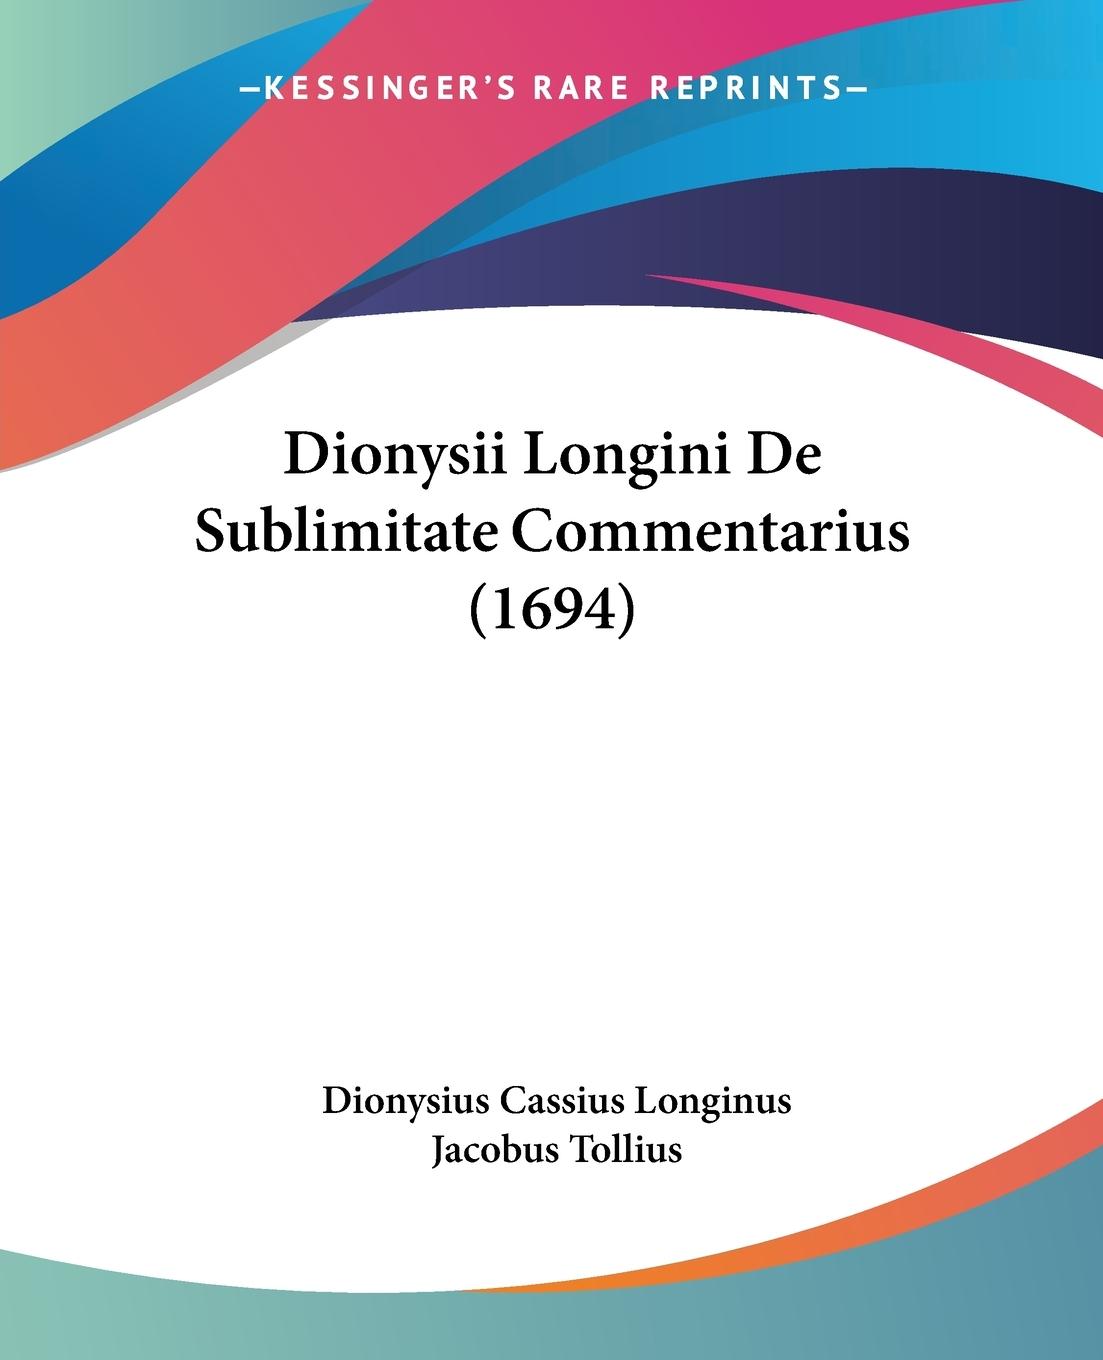 Dionysii Longini De Sublimitate Commentarius (1694) - Longinus, Dionysius Cassius